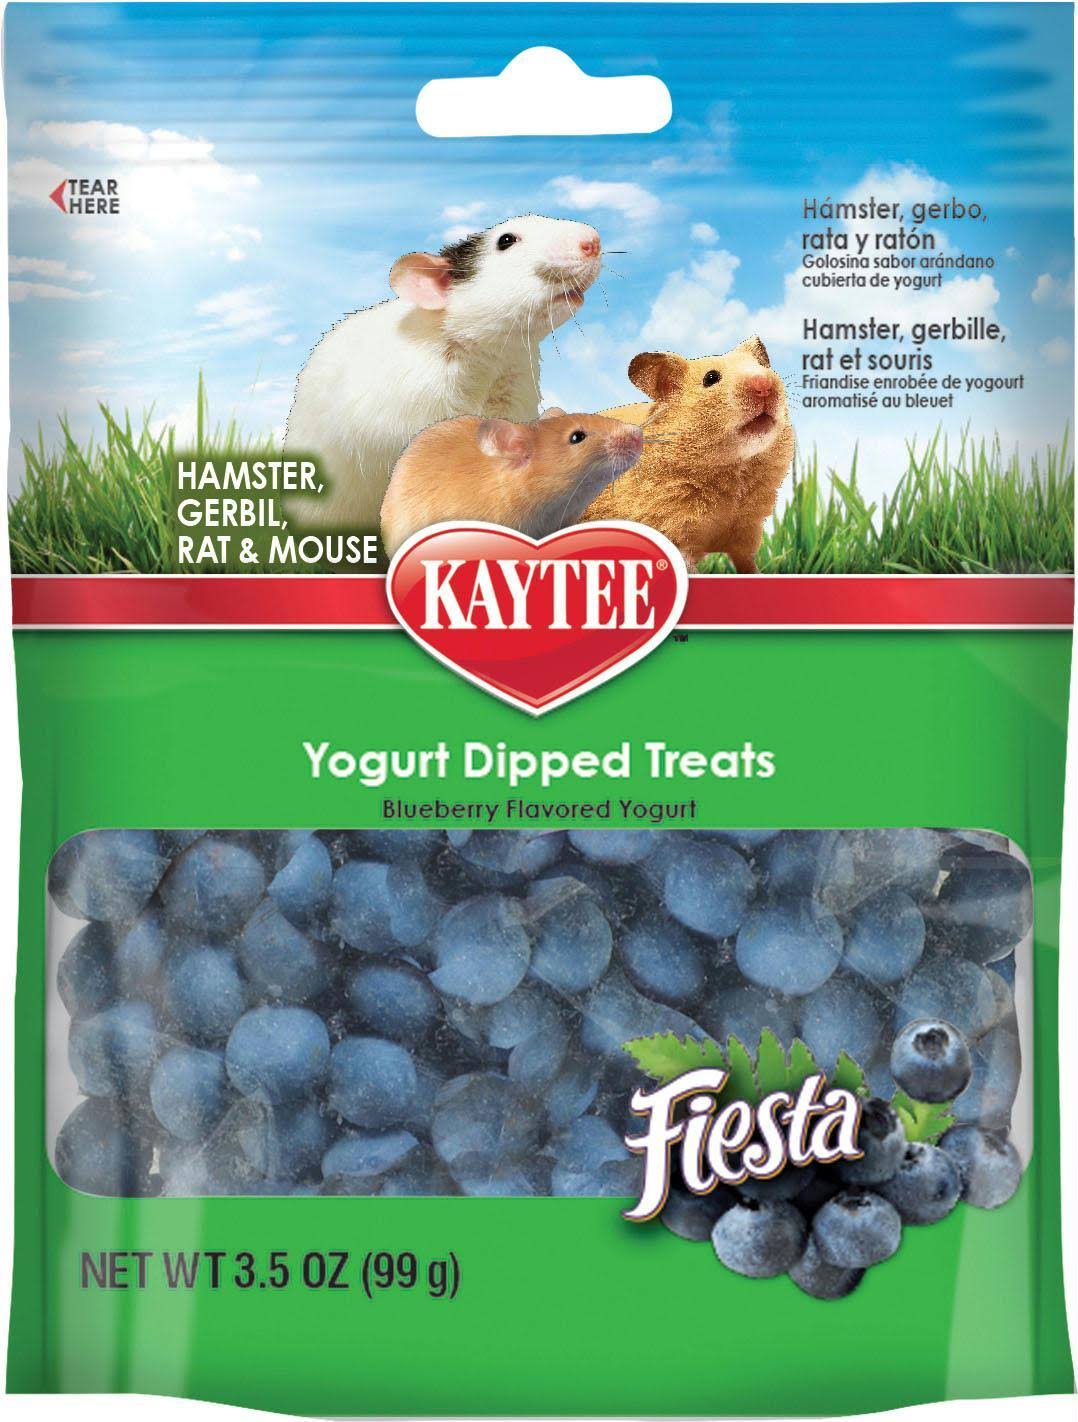 Kaytee Fiesta Blueberry Flavored Yogurt Dipped Hamster & Gerbil Treats